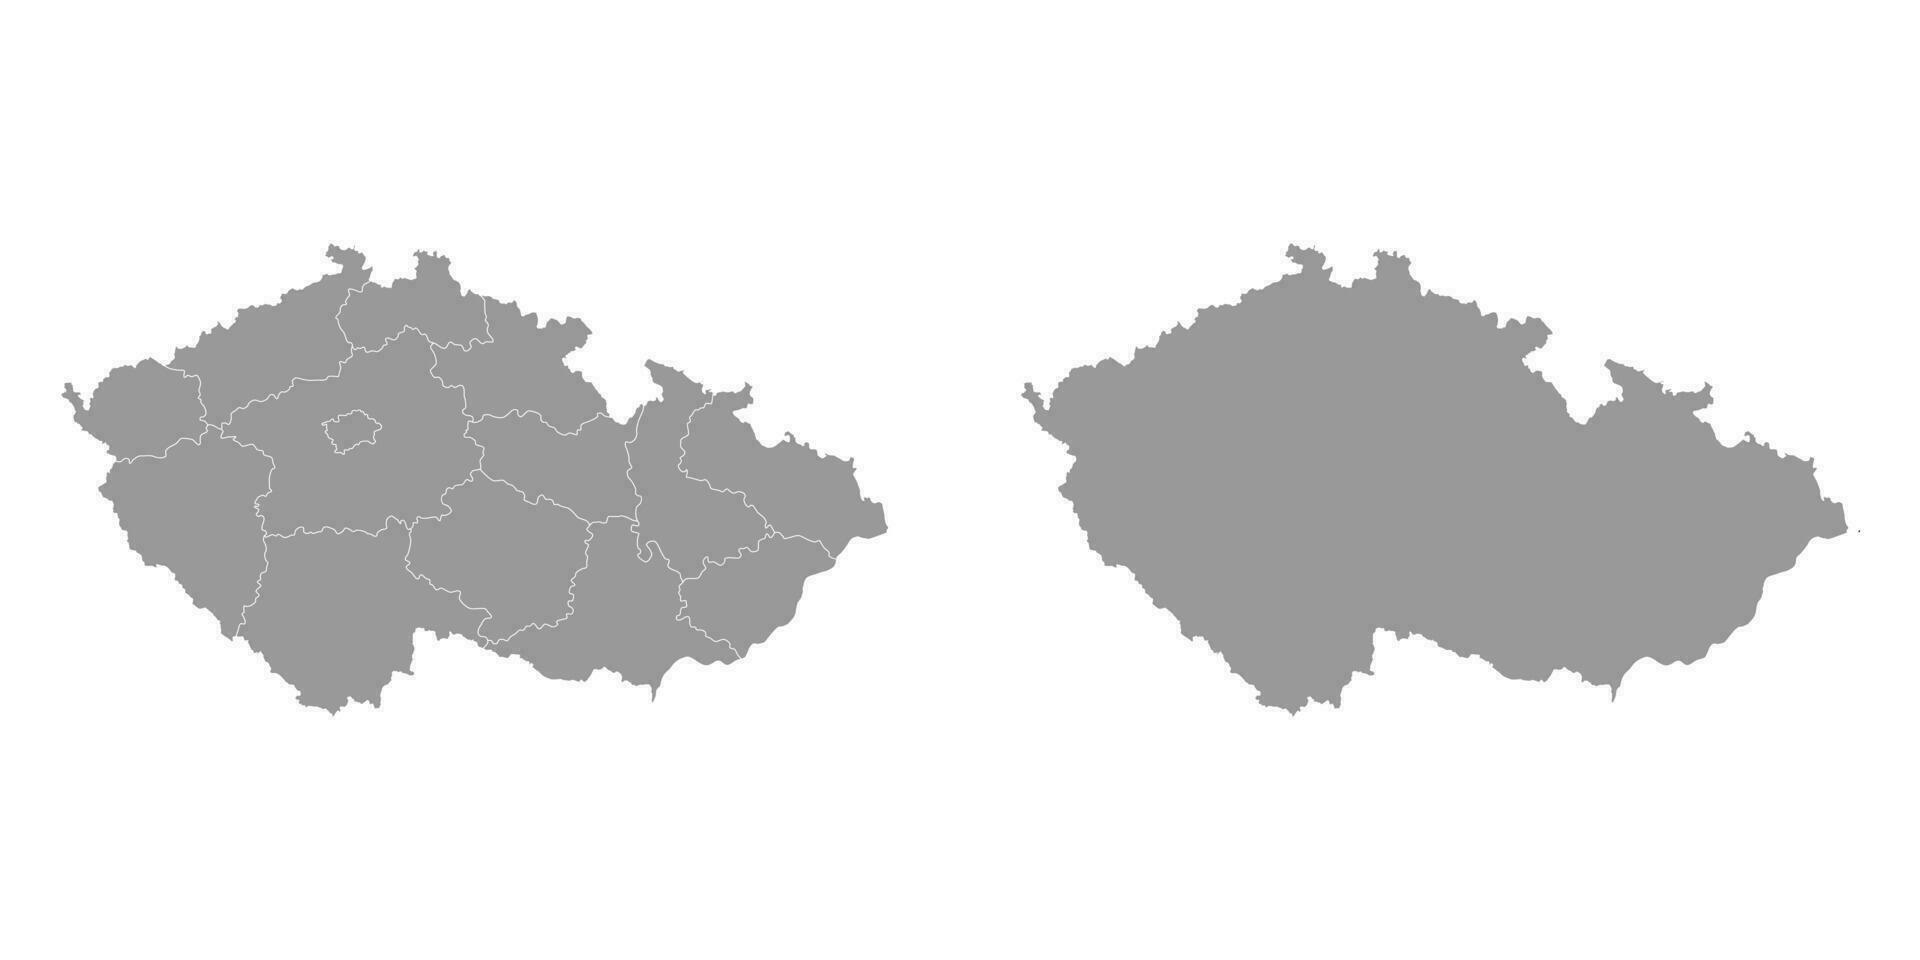 tchèque république gris carte avec Régions. vecteur illustration.